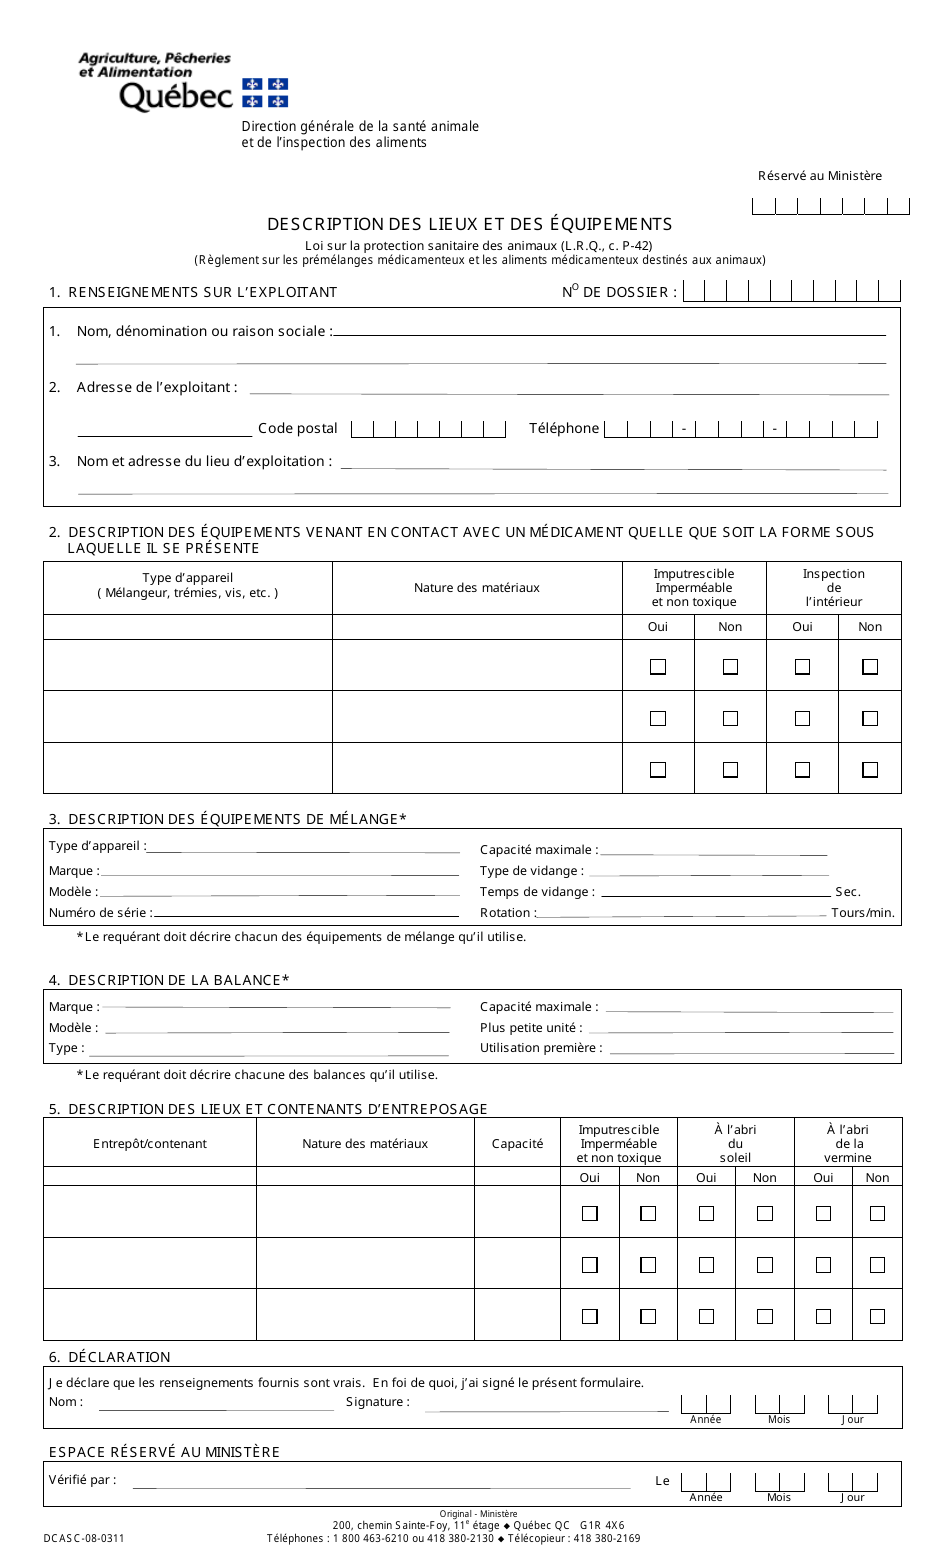 Forme DCASC-08-0311 Description DES Lieux Et DES Equipements - Quebec, Canada (French), Page 1